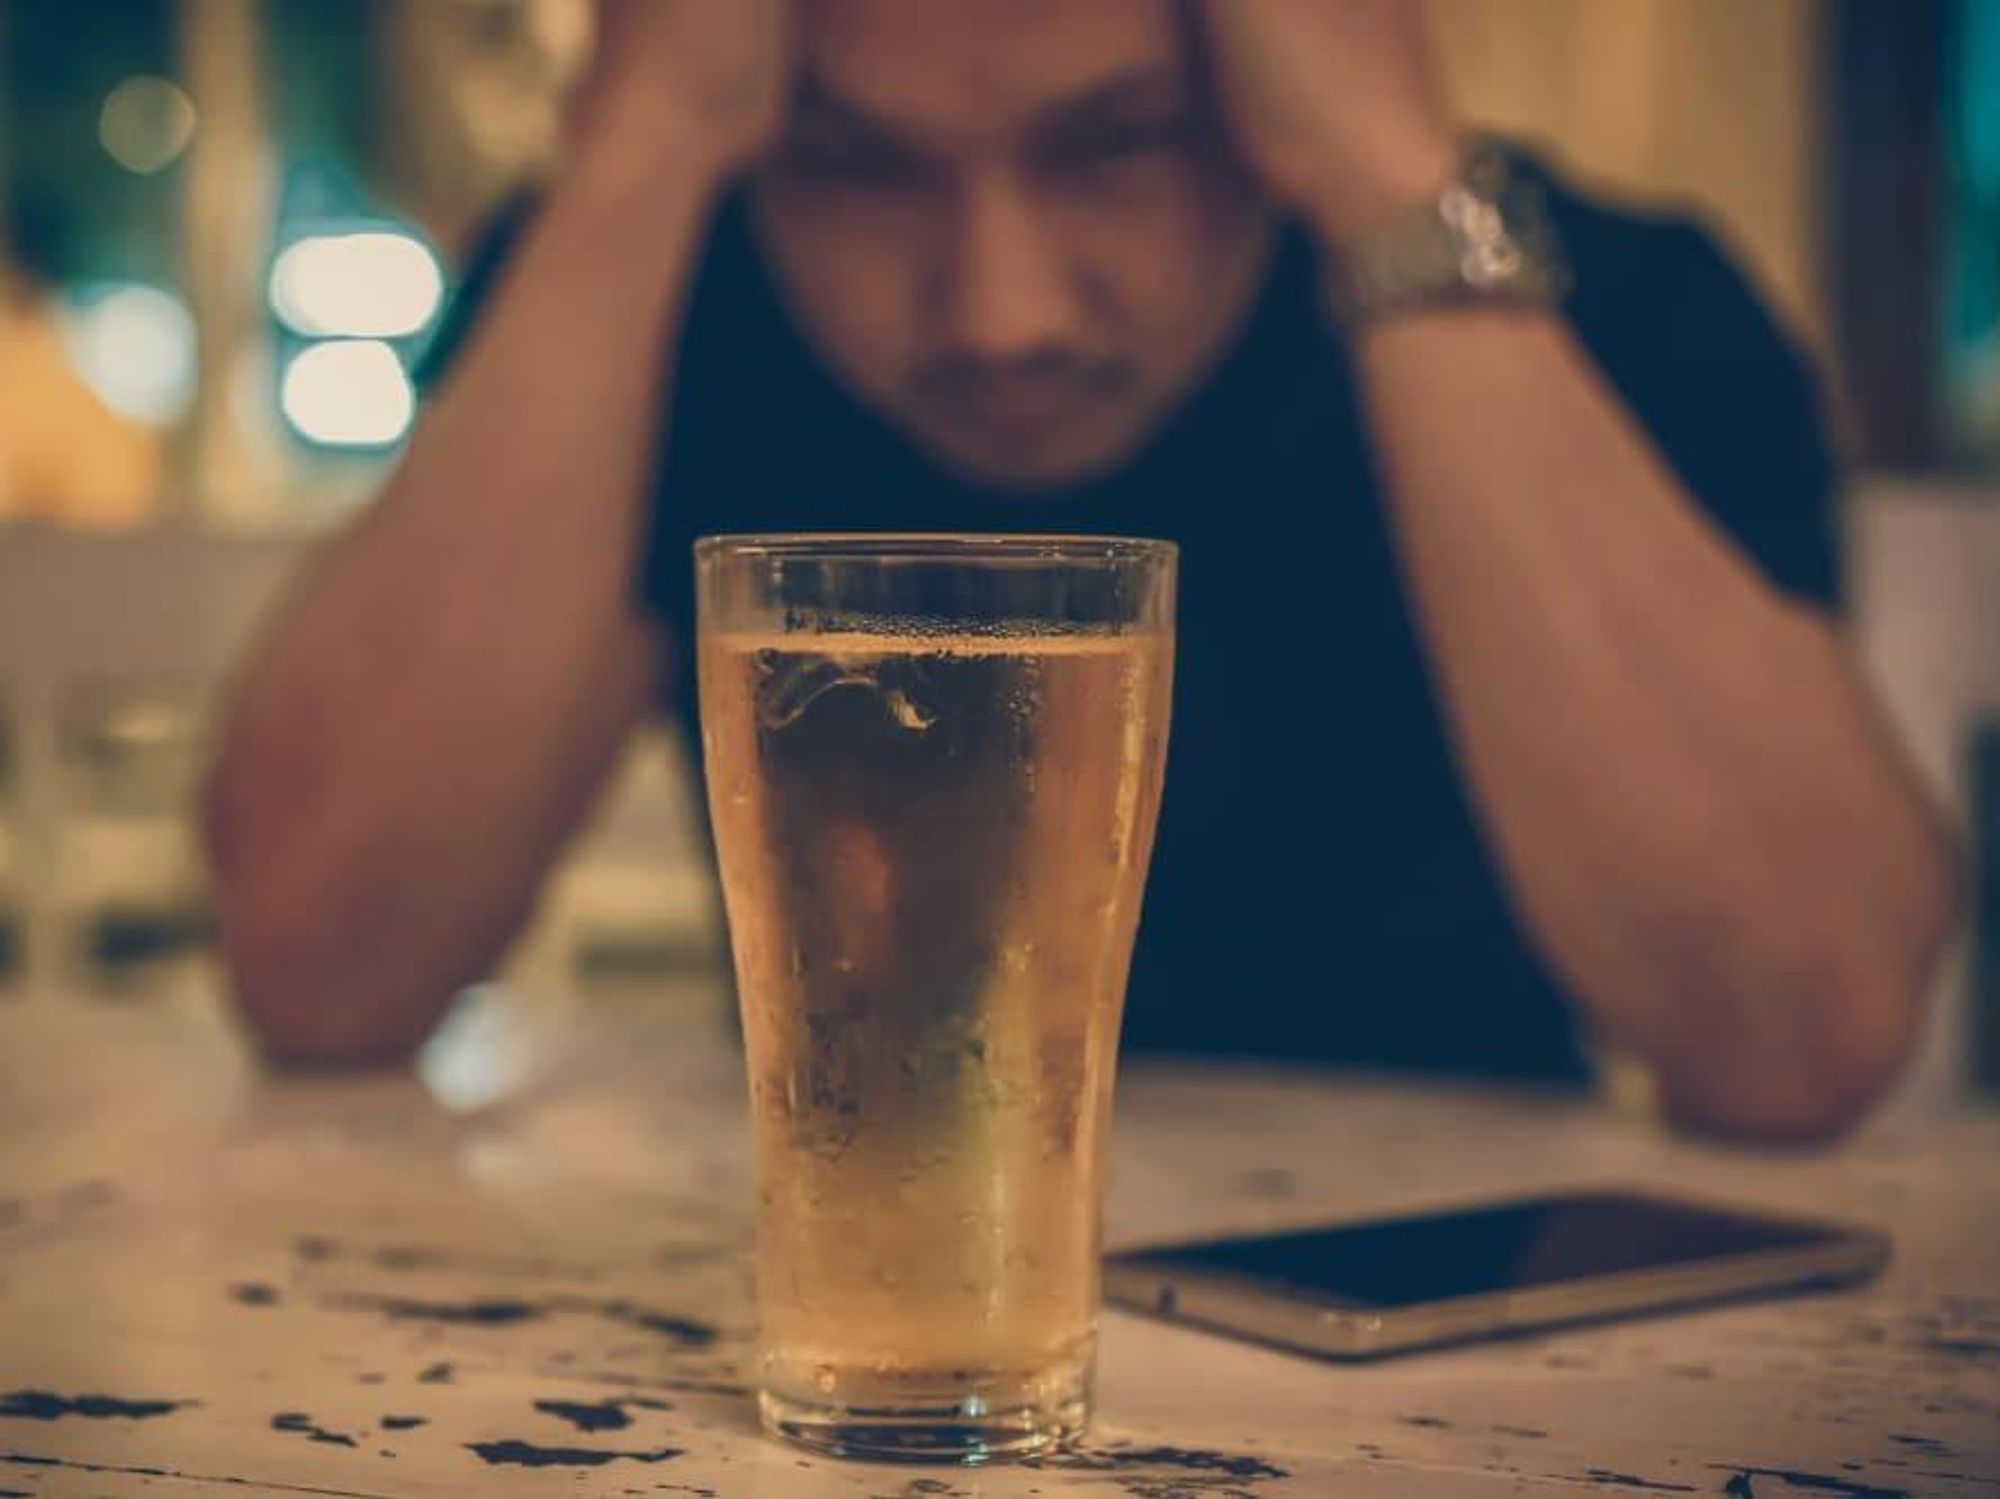 Man alone at bar drinking beer